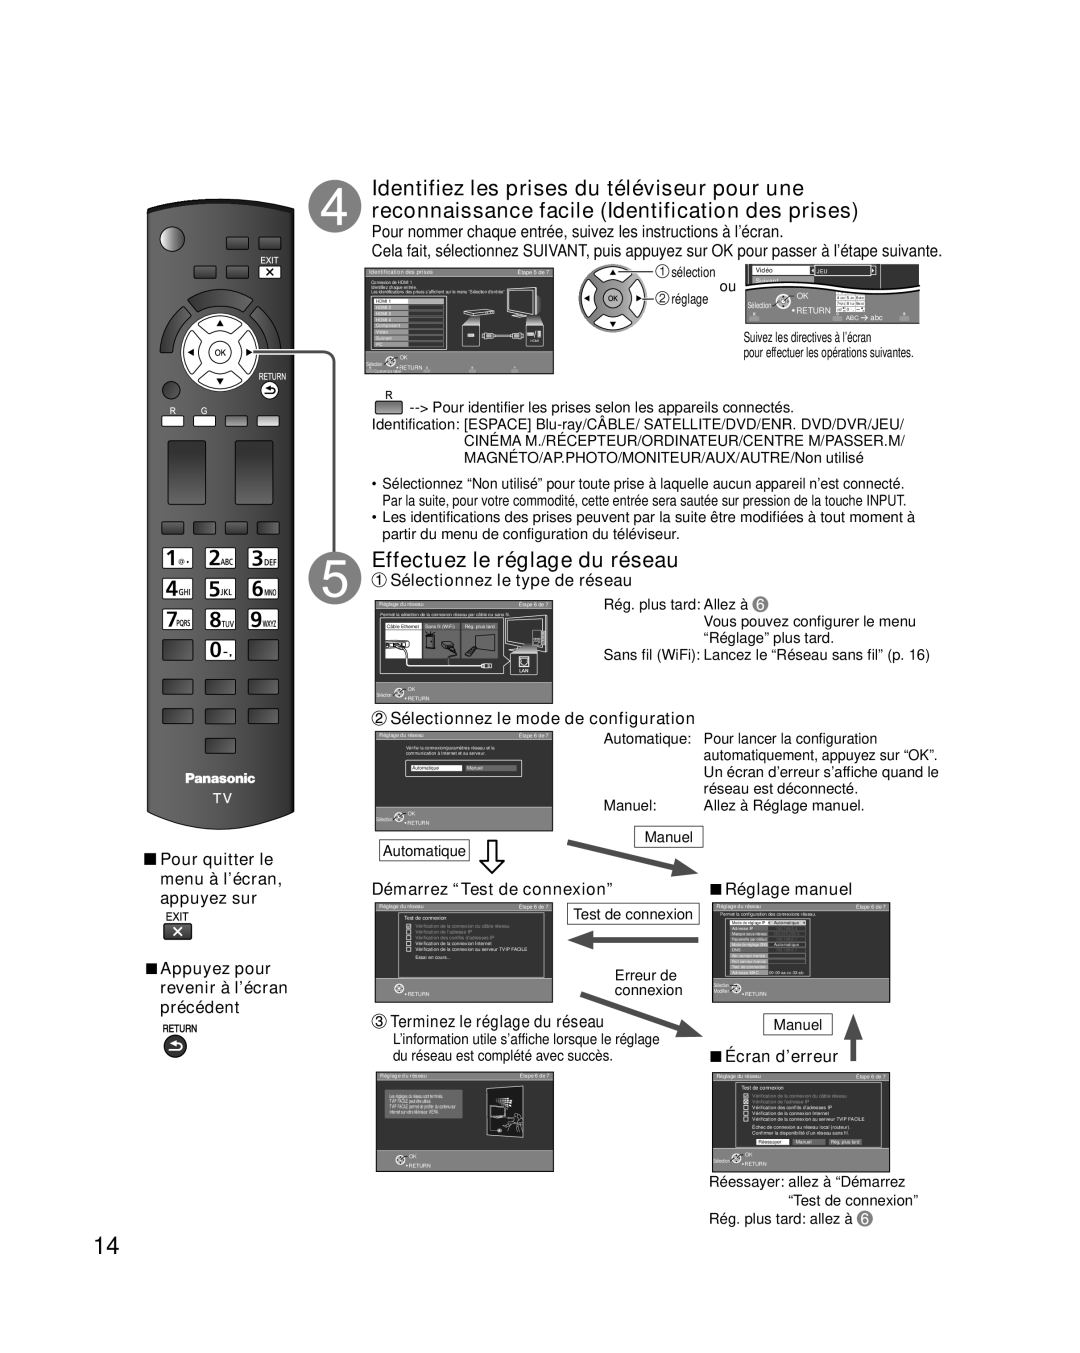 Panasonic TC-L37E3 Effectuez le réglage du réseau, Pour nommer chaque entrée, suivez les instructions à l’écran, sélection 